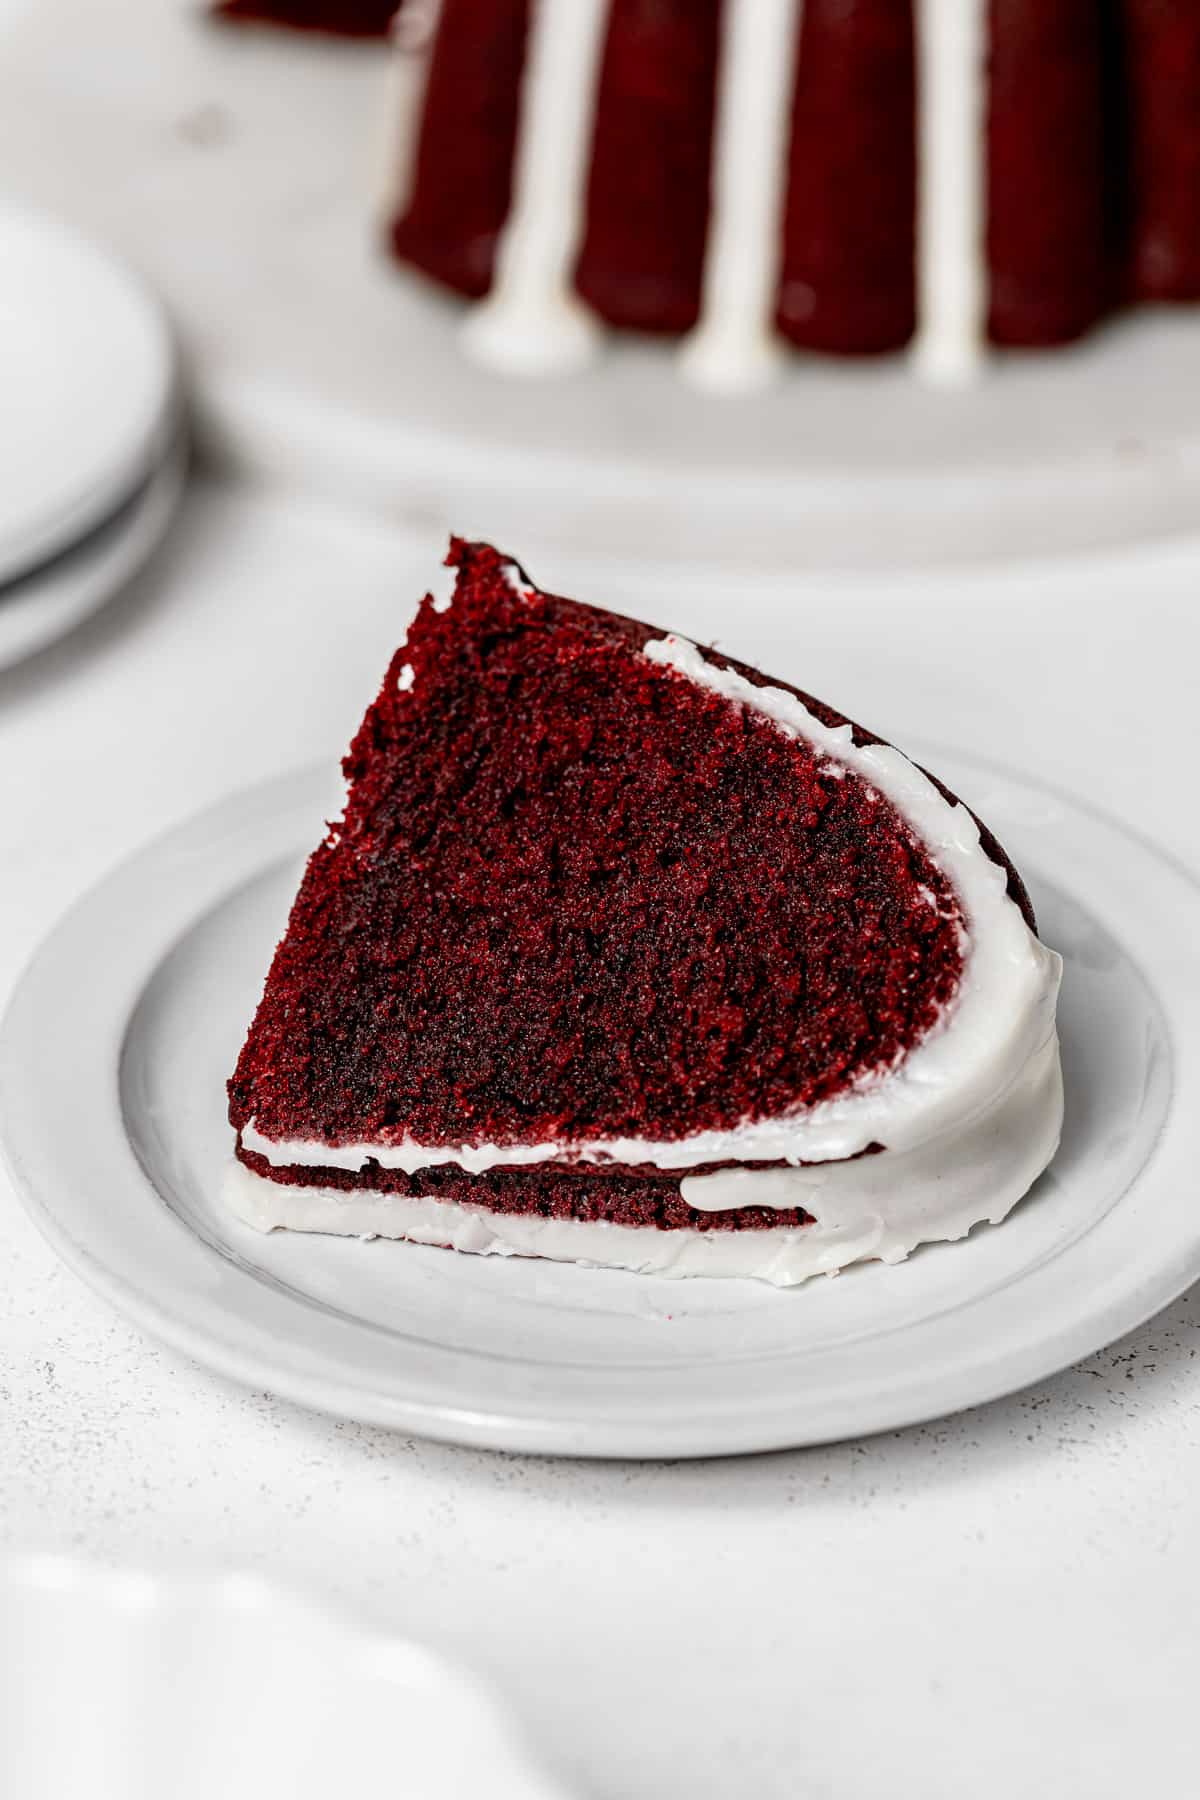 slice of red velvet bundt cake on white plate.